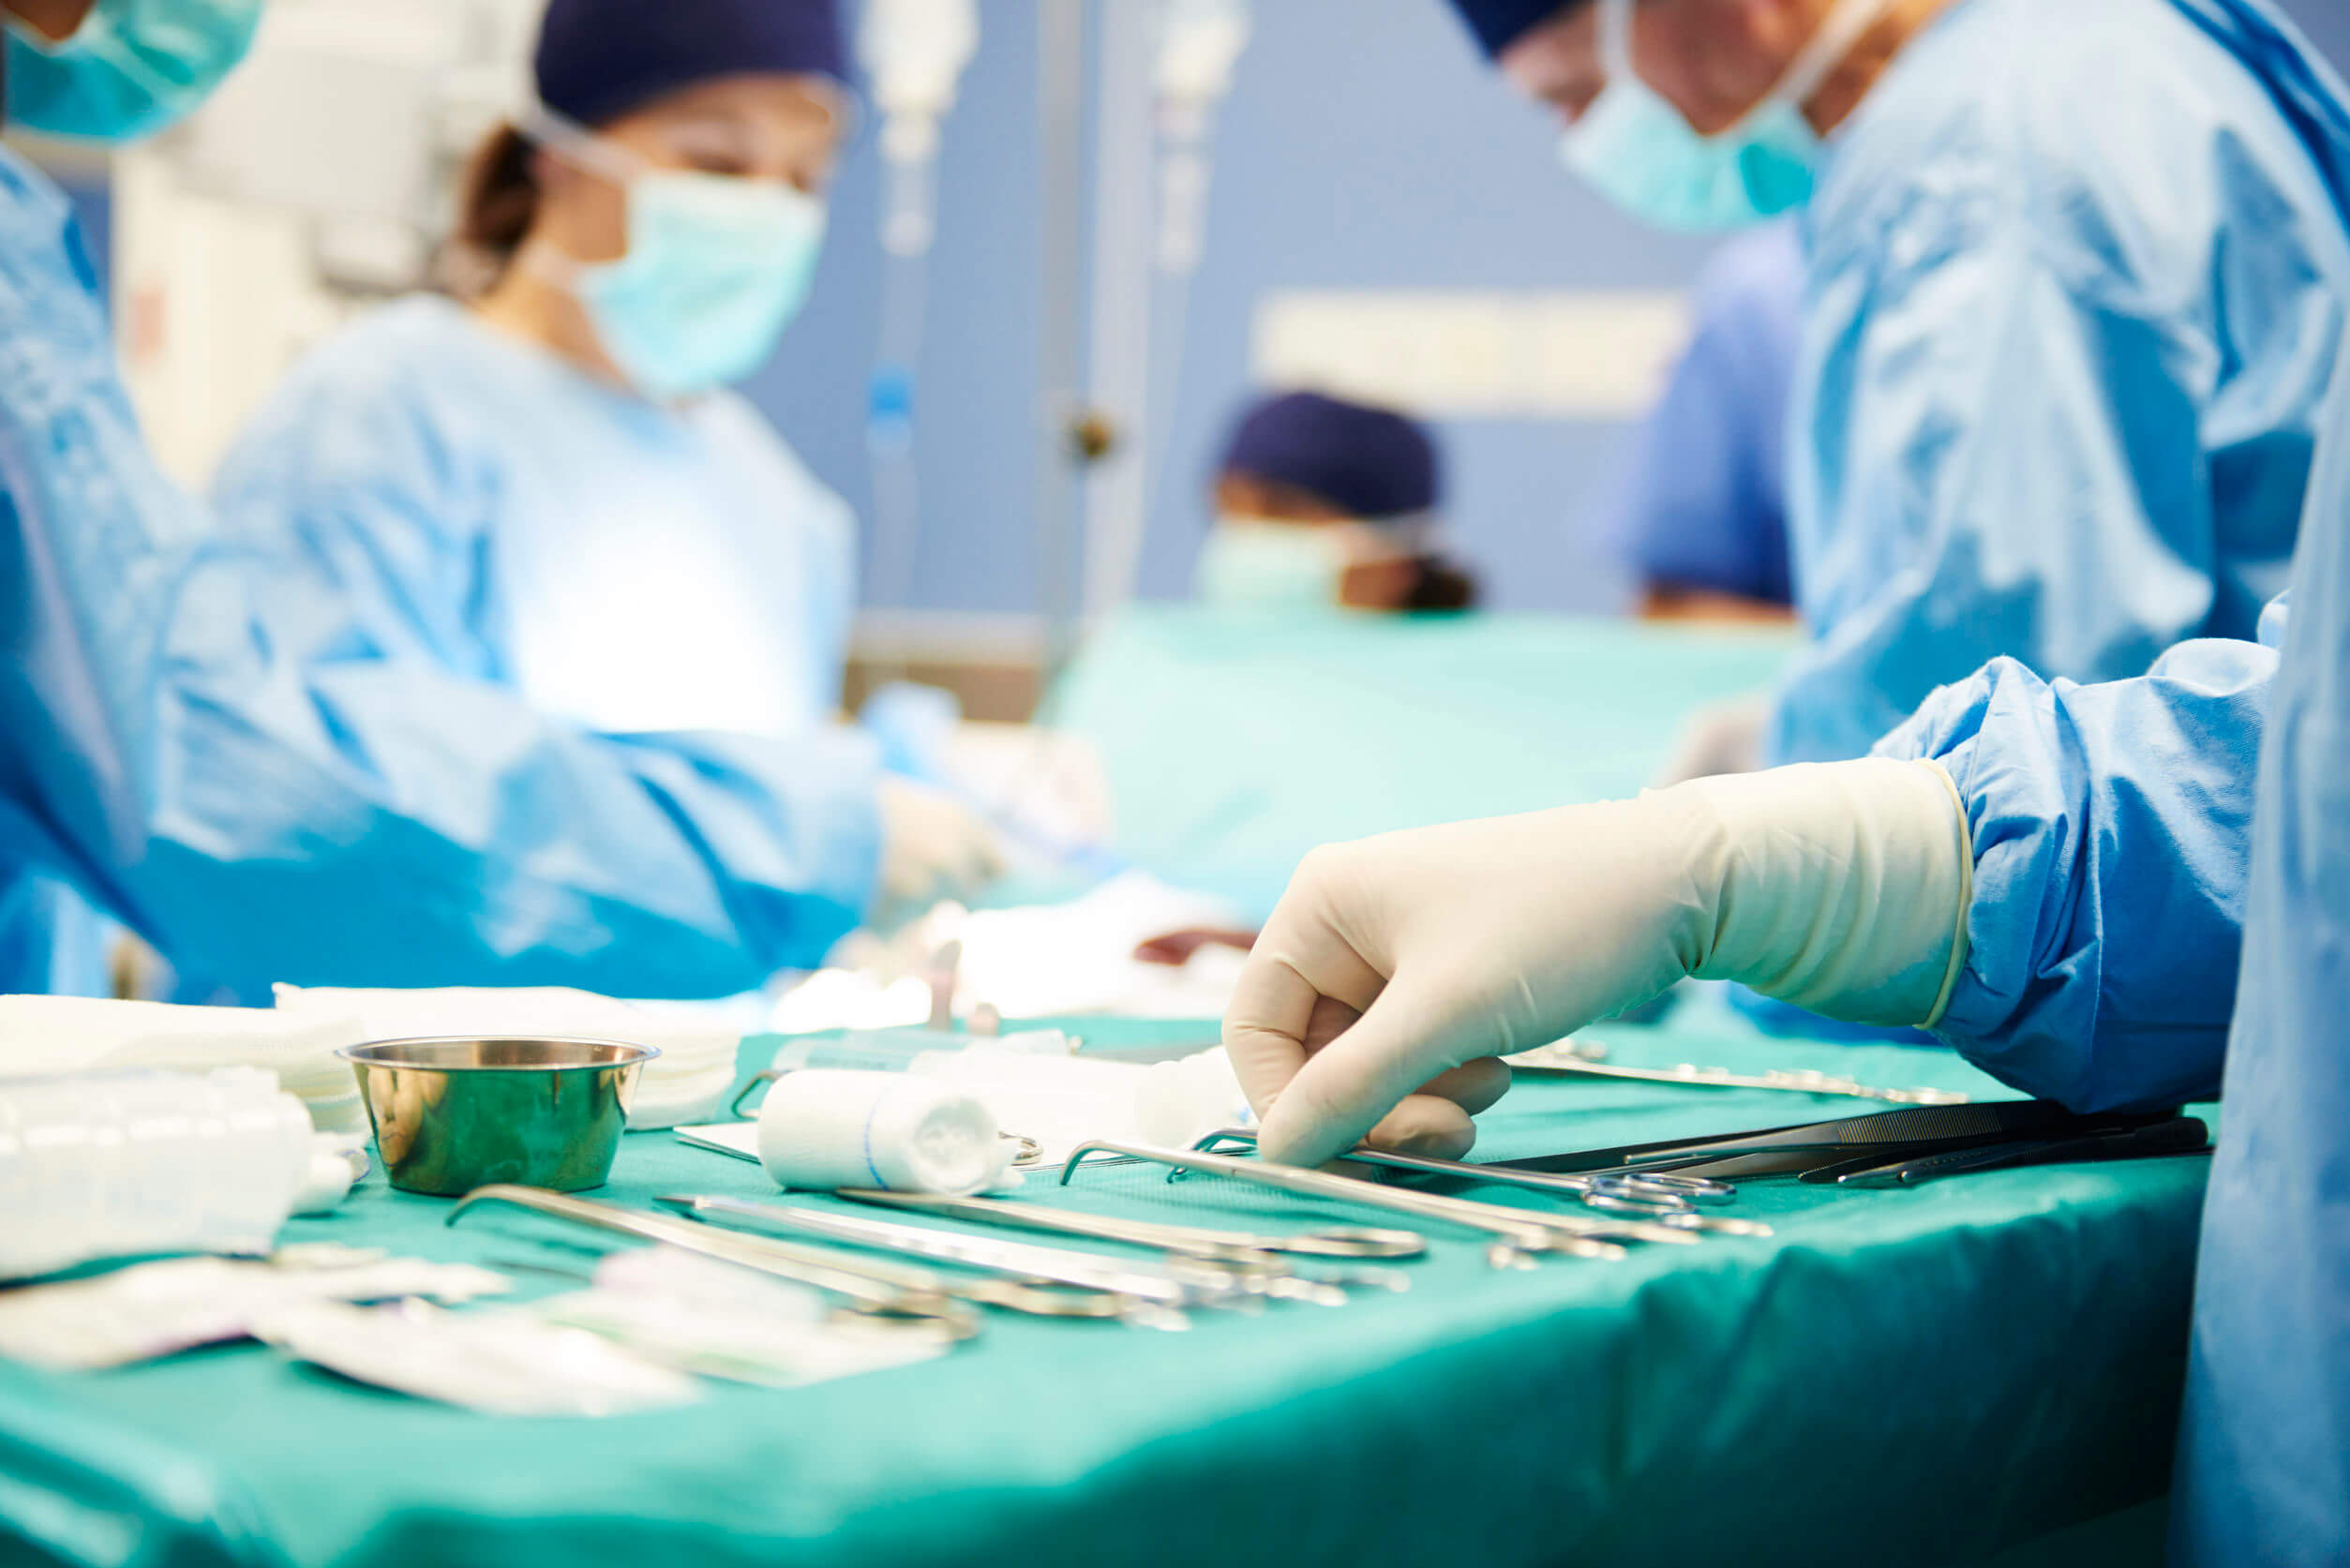 Los abscesos intraabdominales suelen aparecer luego de cirugías.